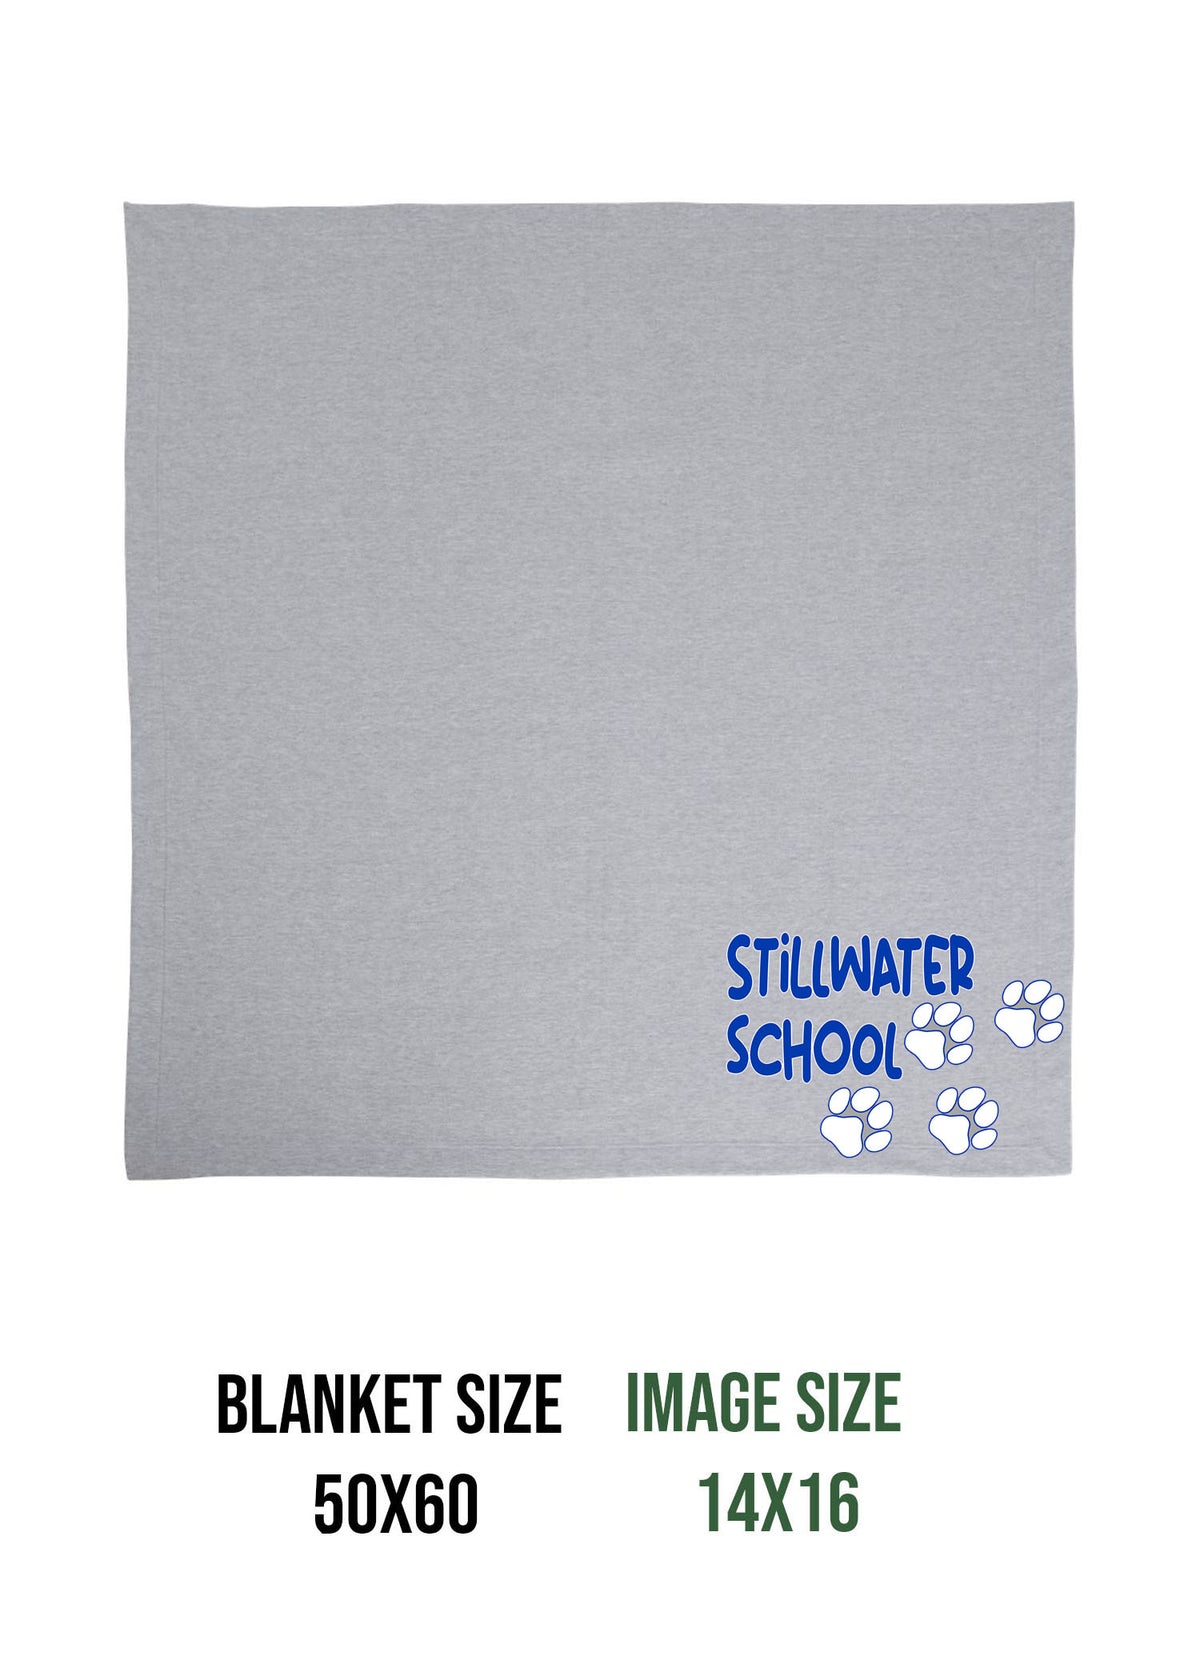 Stillwater school Design 4 Blanket